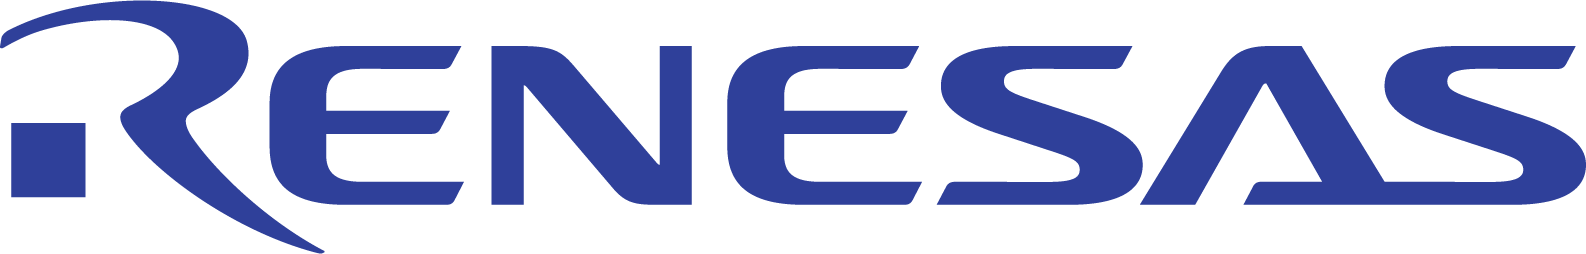 Renesas Electronics Logo png